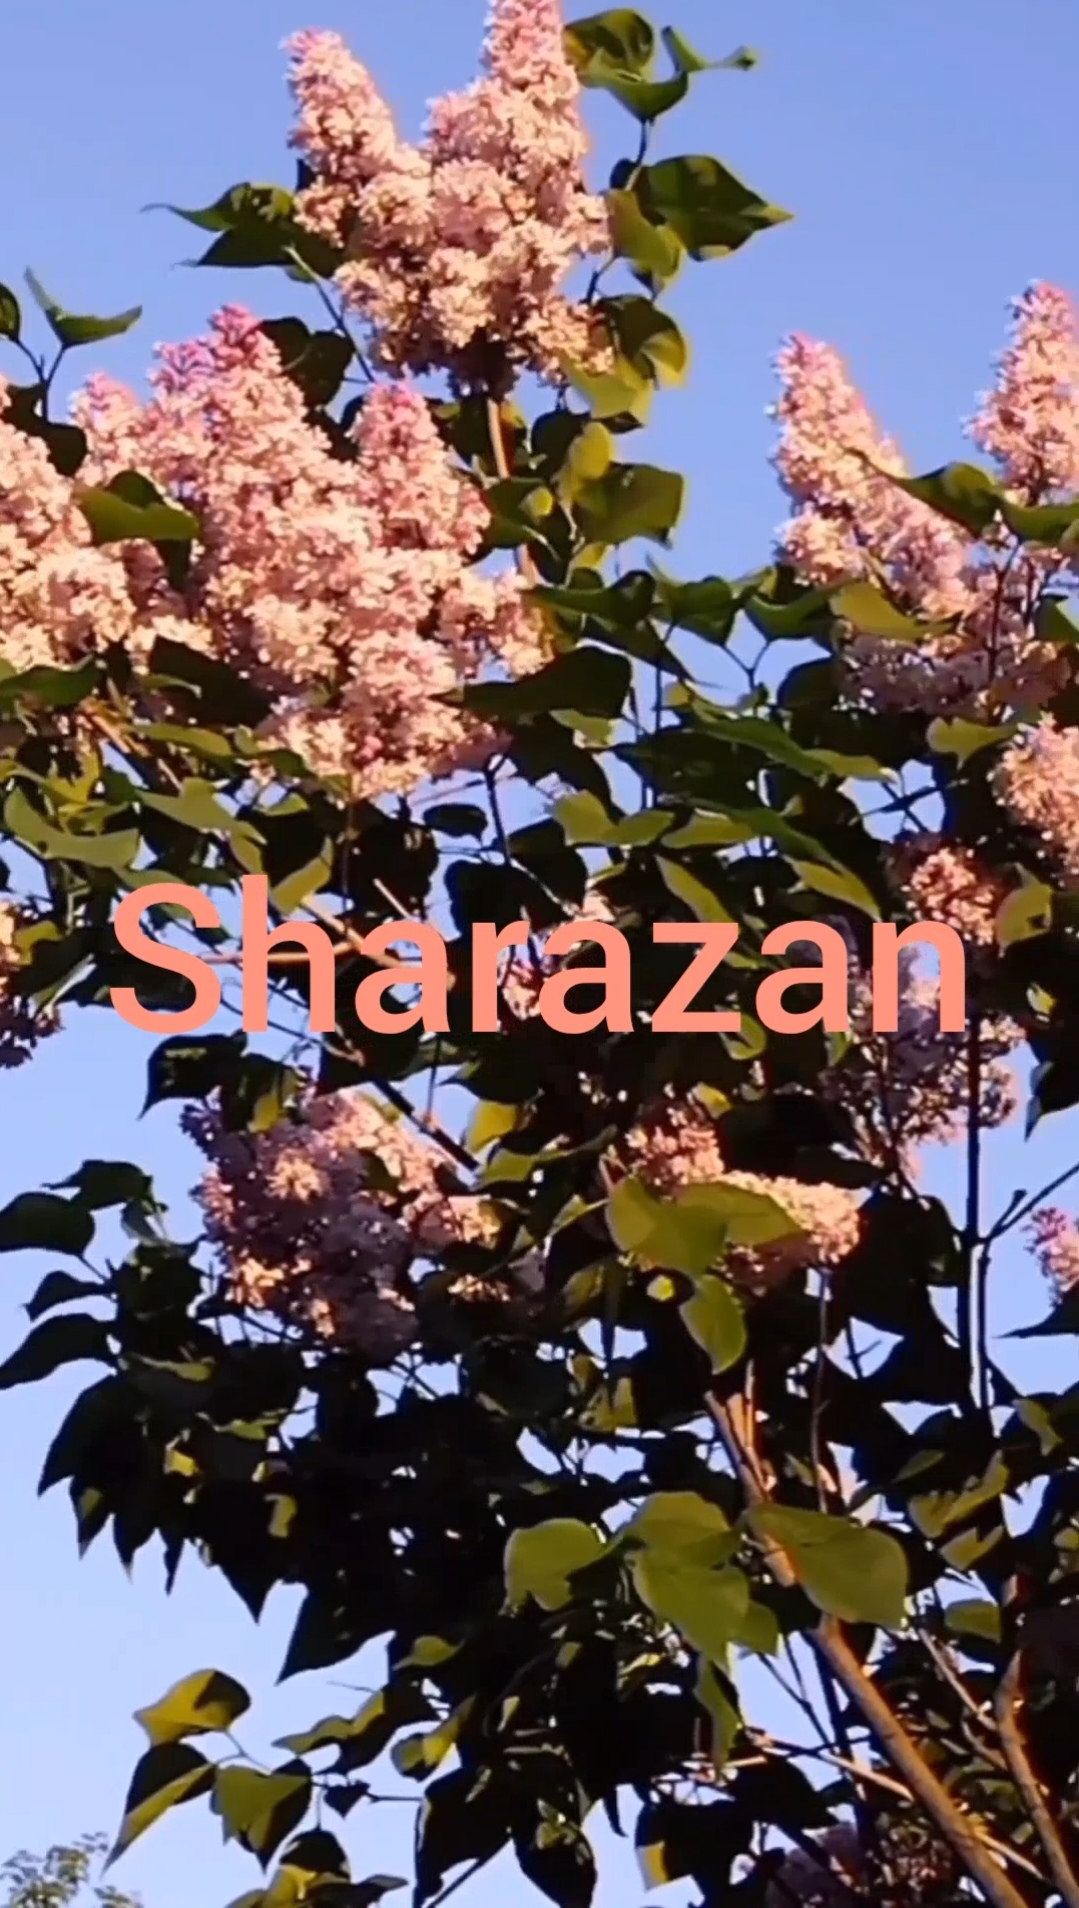 "Sharazan" #cover #песня о прекрасной стране, где никогда не заканчивается  лето и хочется летать.